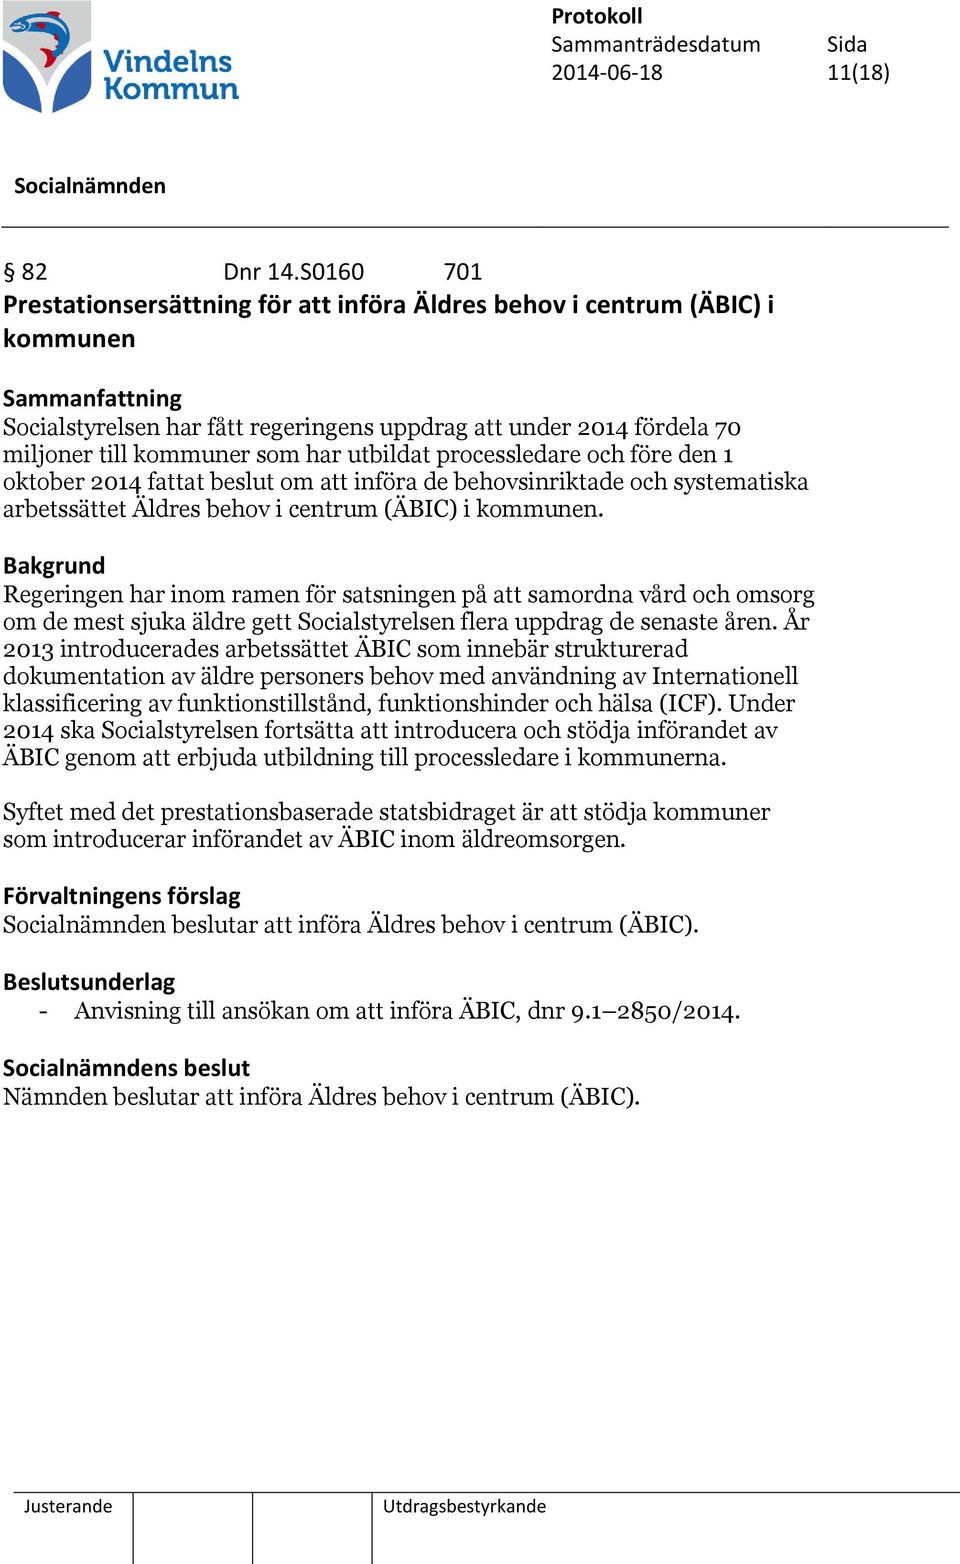 processledare och före den 1 oktober 2014 fattat beslut om att införa de behovsinriktade och systematiska arbetssättet Äldres behov i centrum (ÄBIC) i kommunen.